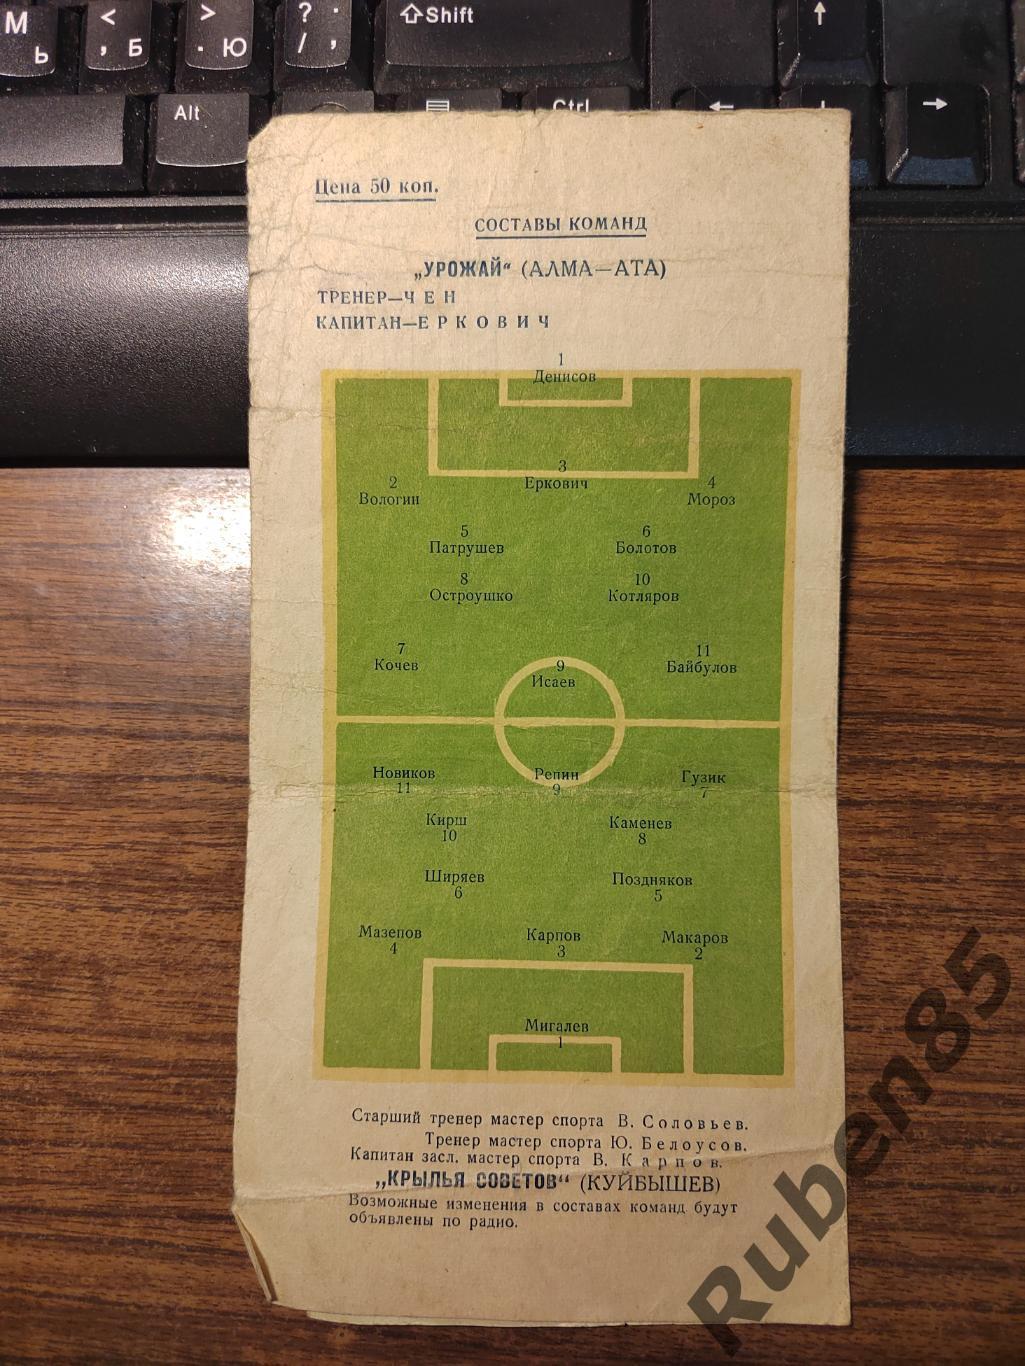 Футбол Программа Крылья Советов - Урожай Алма-Ата 1956 2